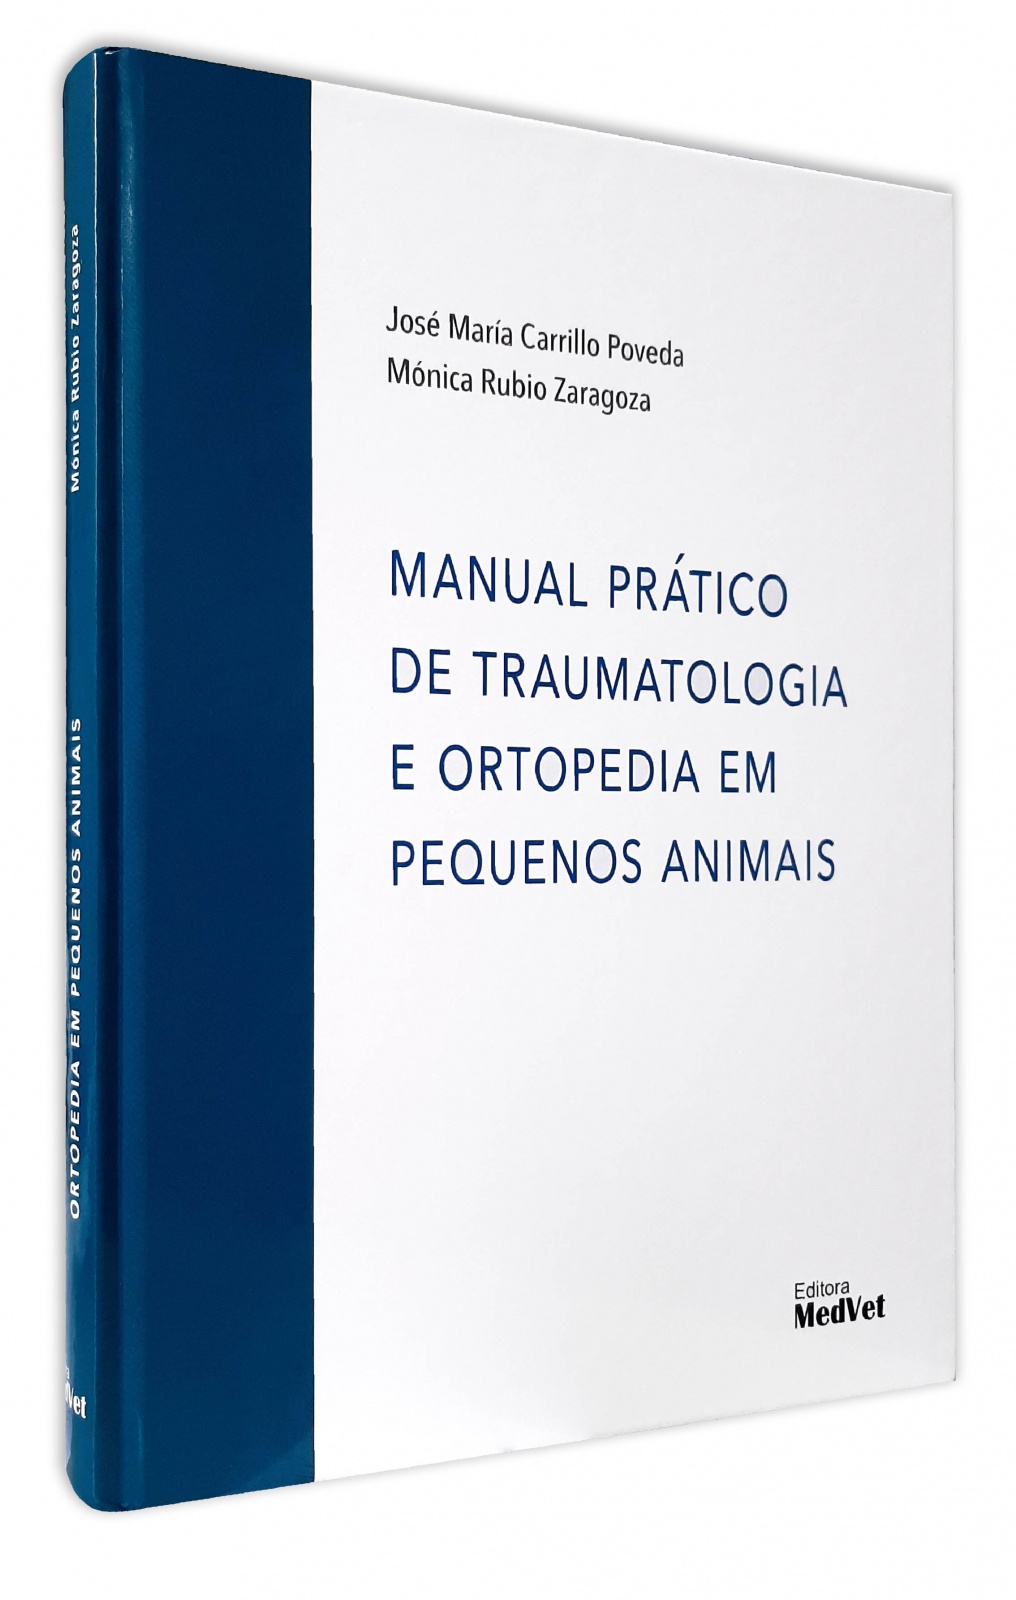 Manual Prático De Traumatologia E Ortopedia Em Pequenos Animais